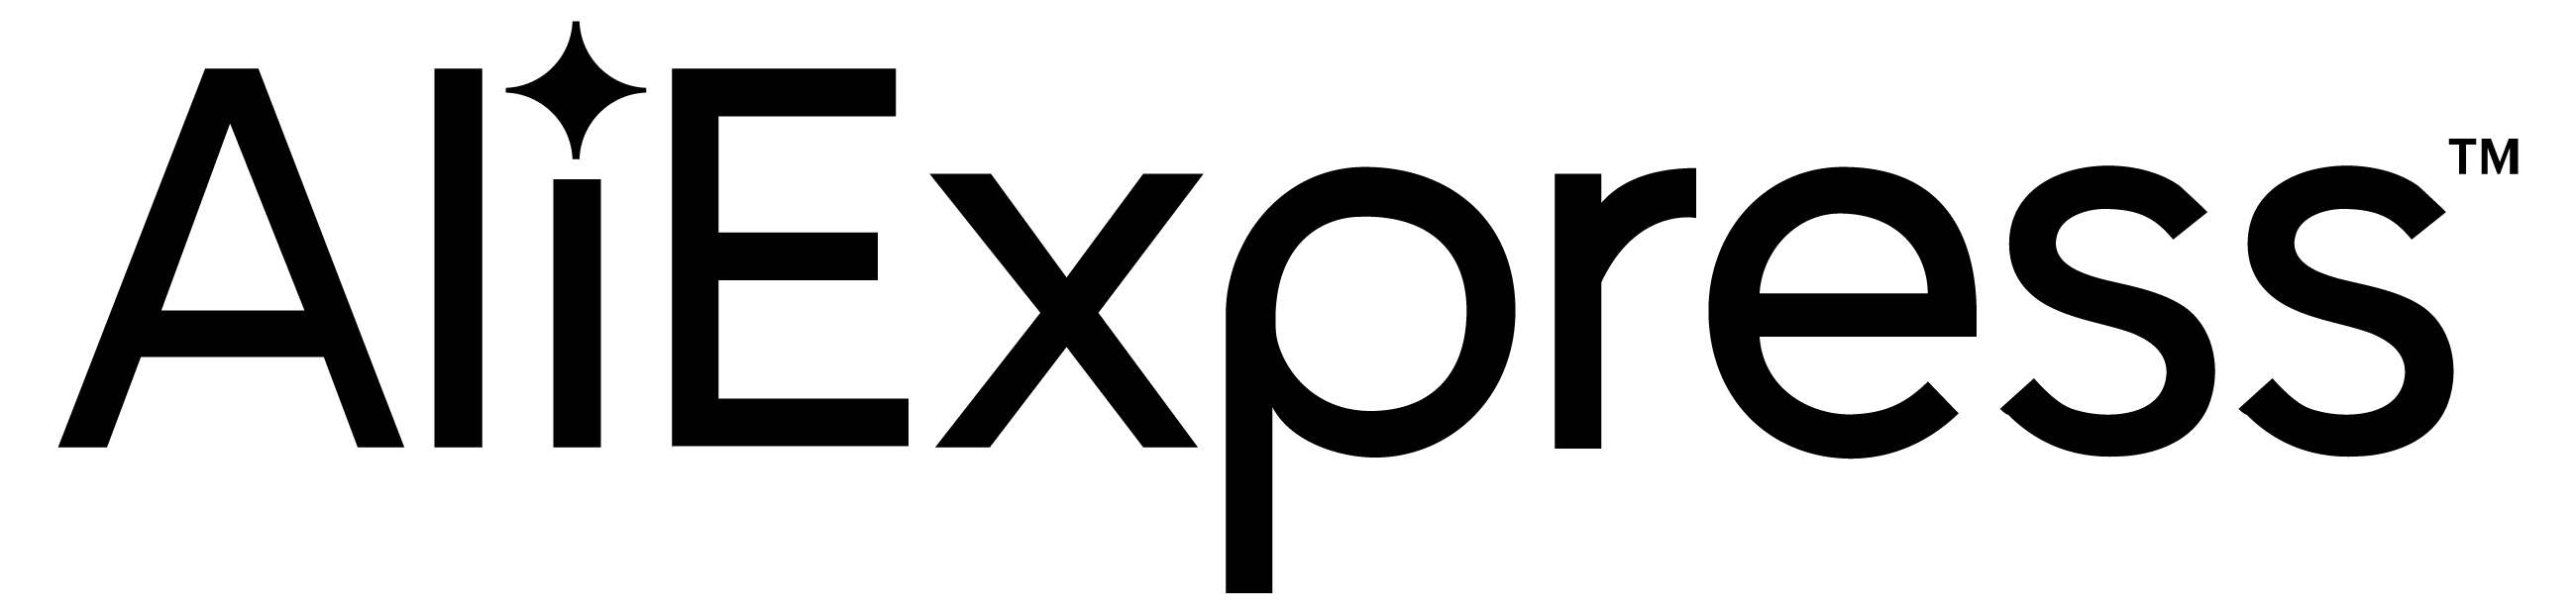 Logo Aliexpress Noir